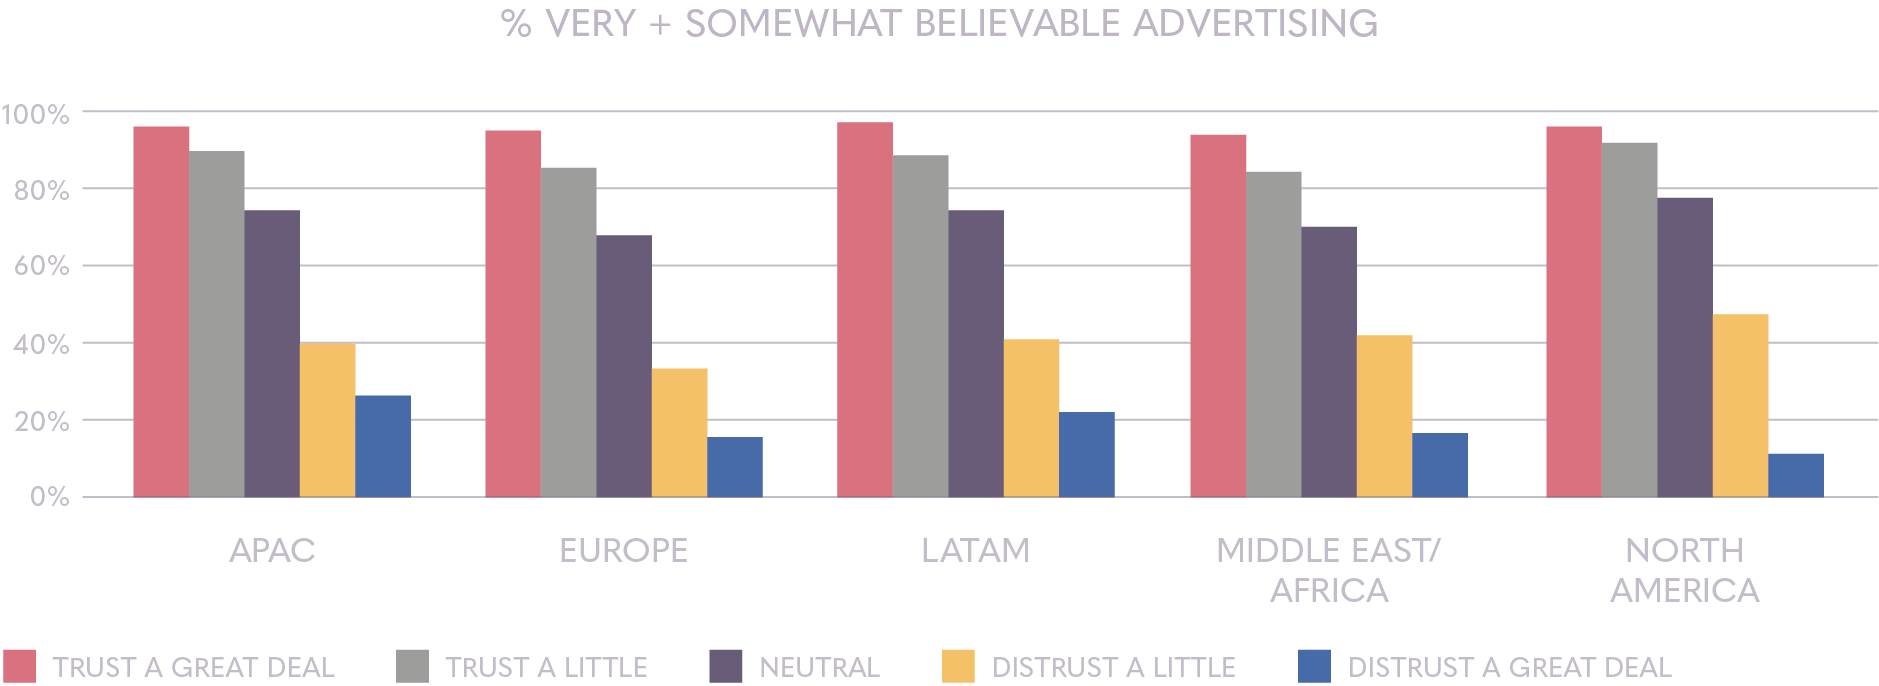 Believable advertising by region | Ipsos